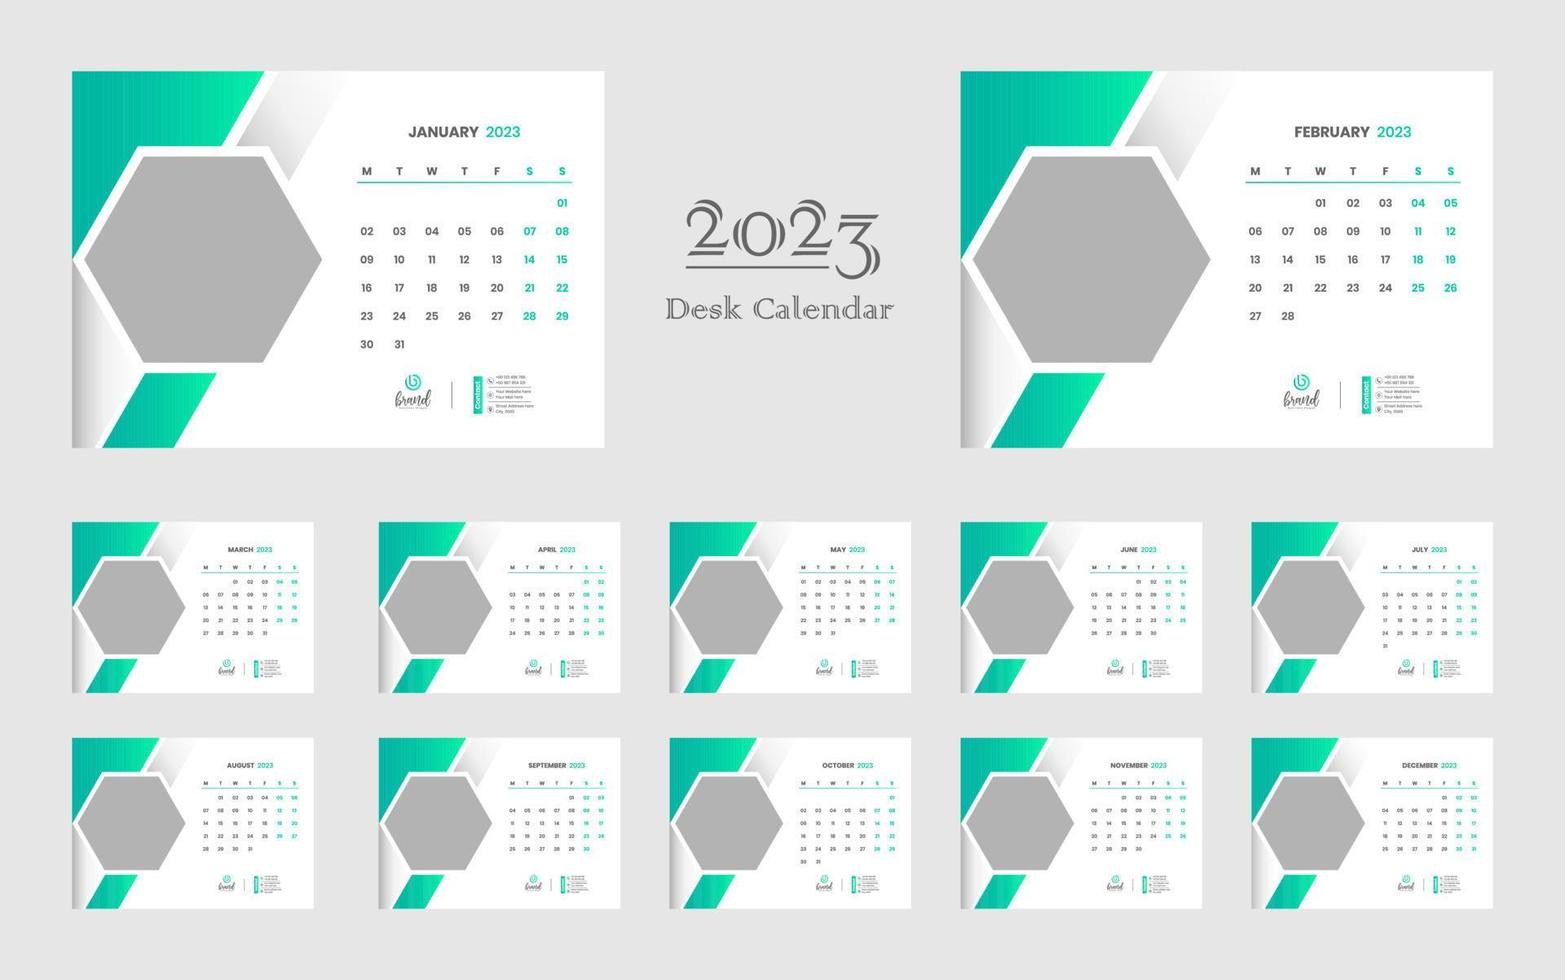 Tischkalender 2023 Vorlage vektor